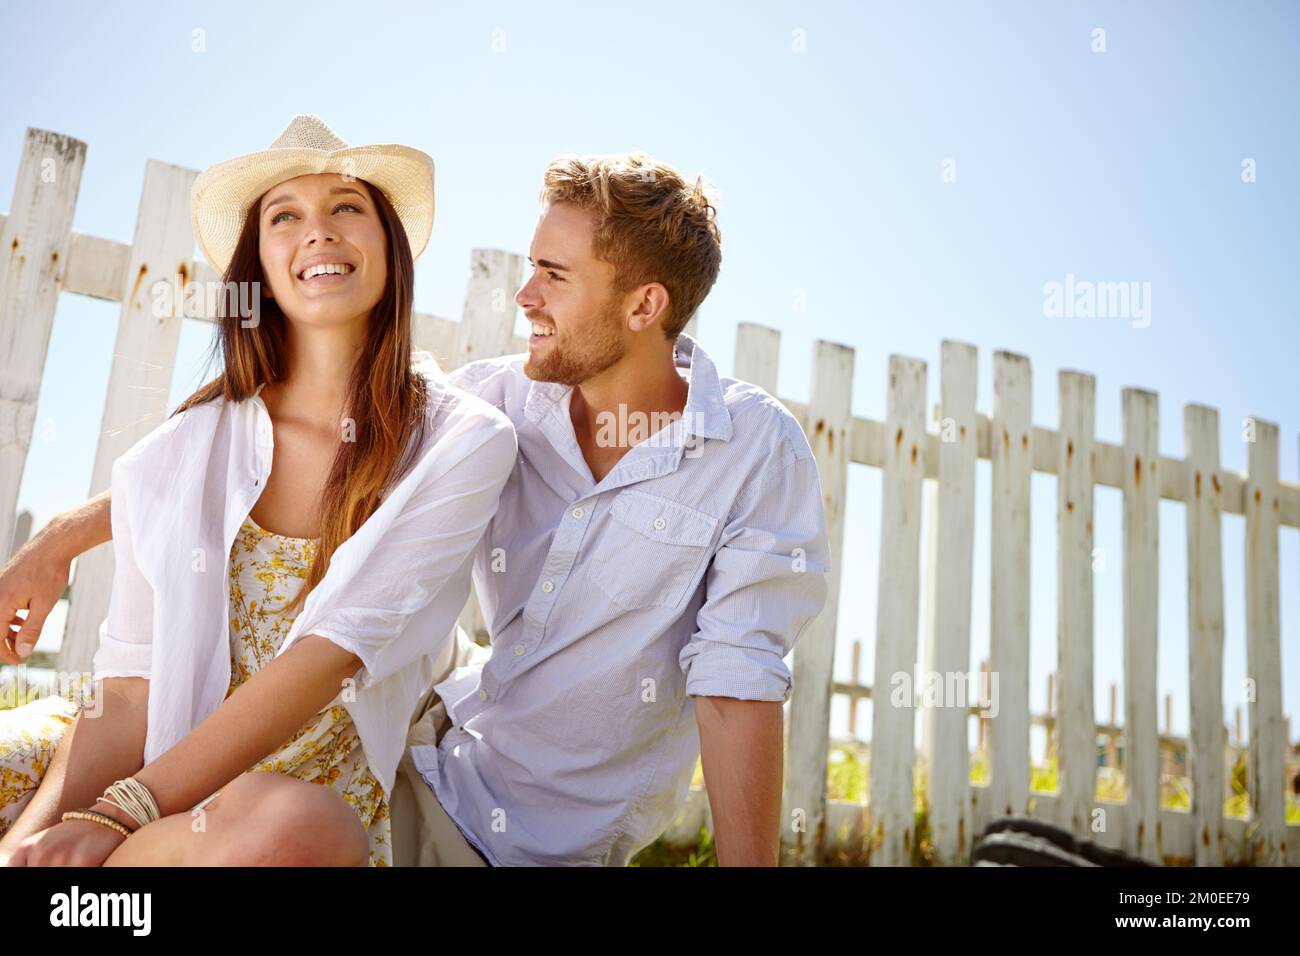 Días de verano de ensueño. Una atractiva pareja joven riendo rapidamente mientras estaba sentado afuera. Foto de stock